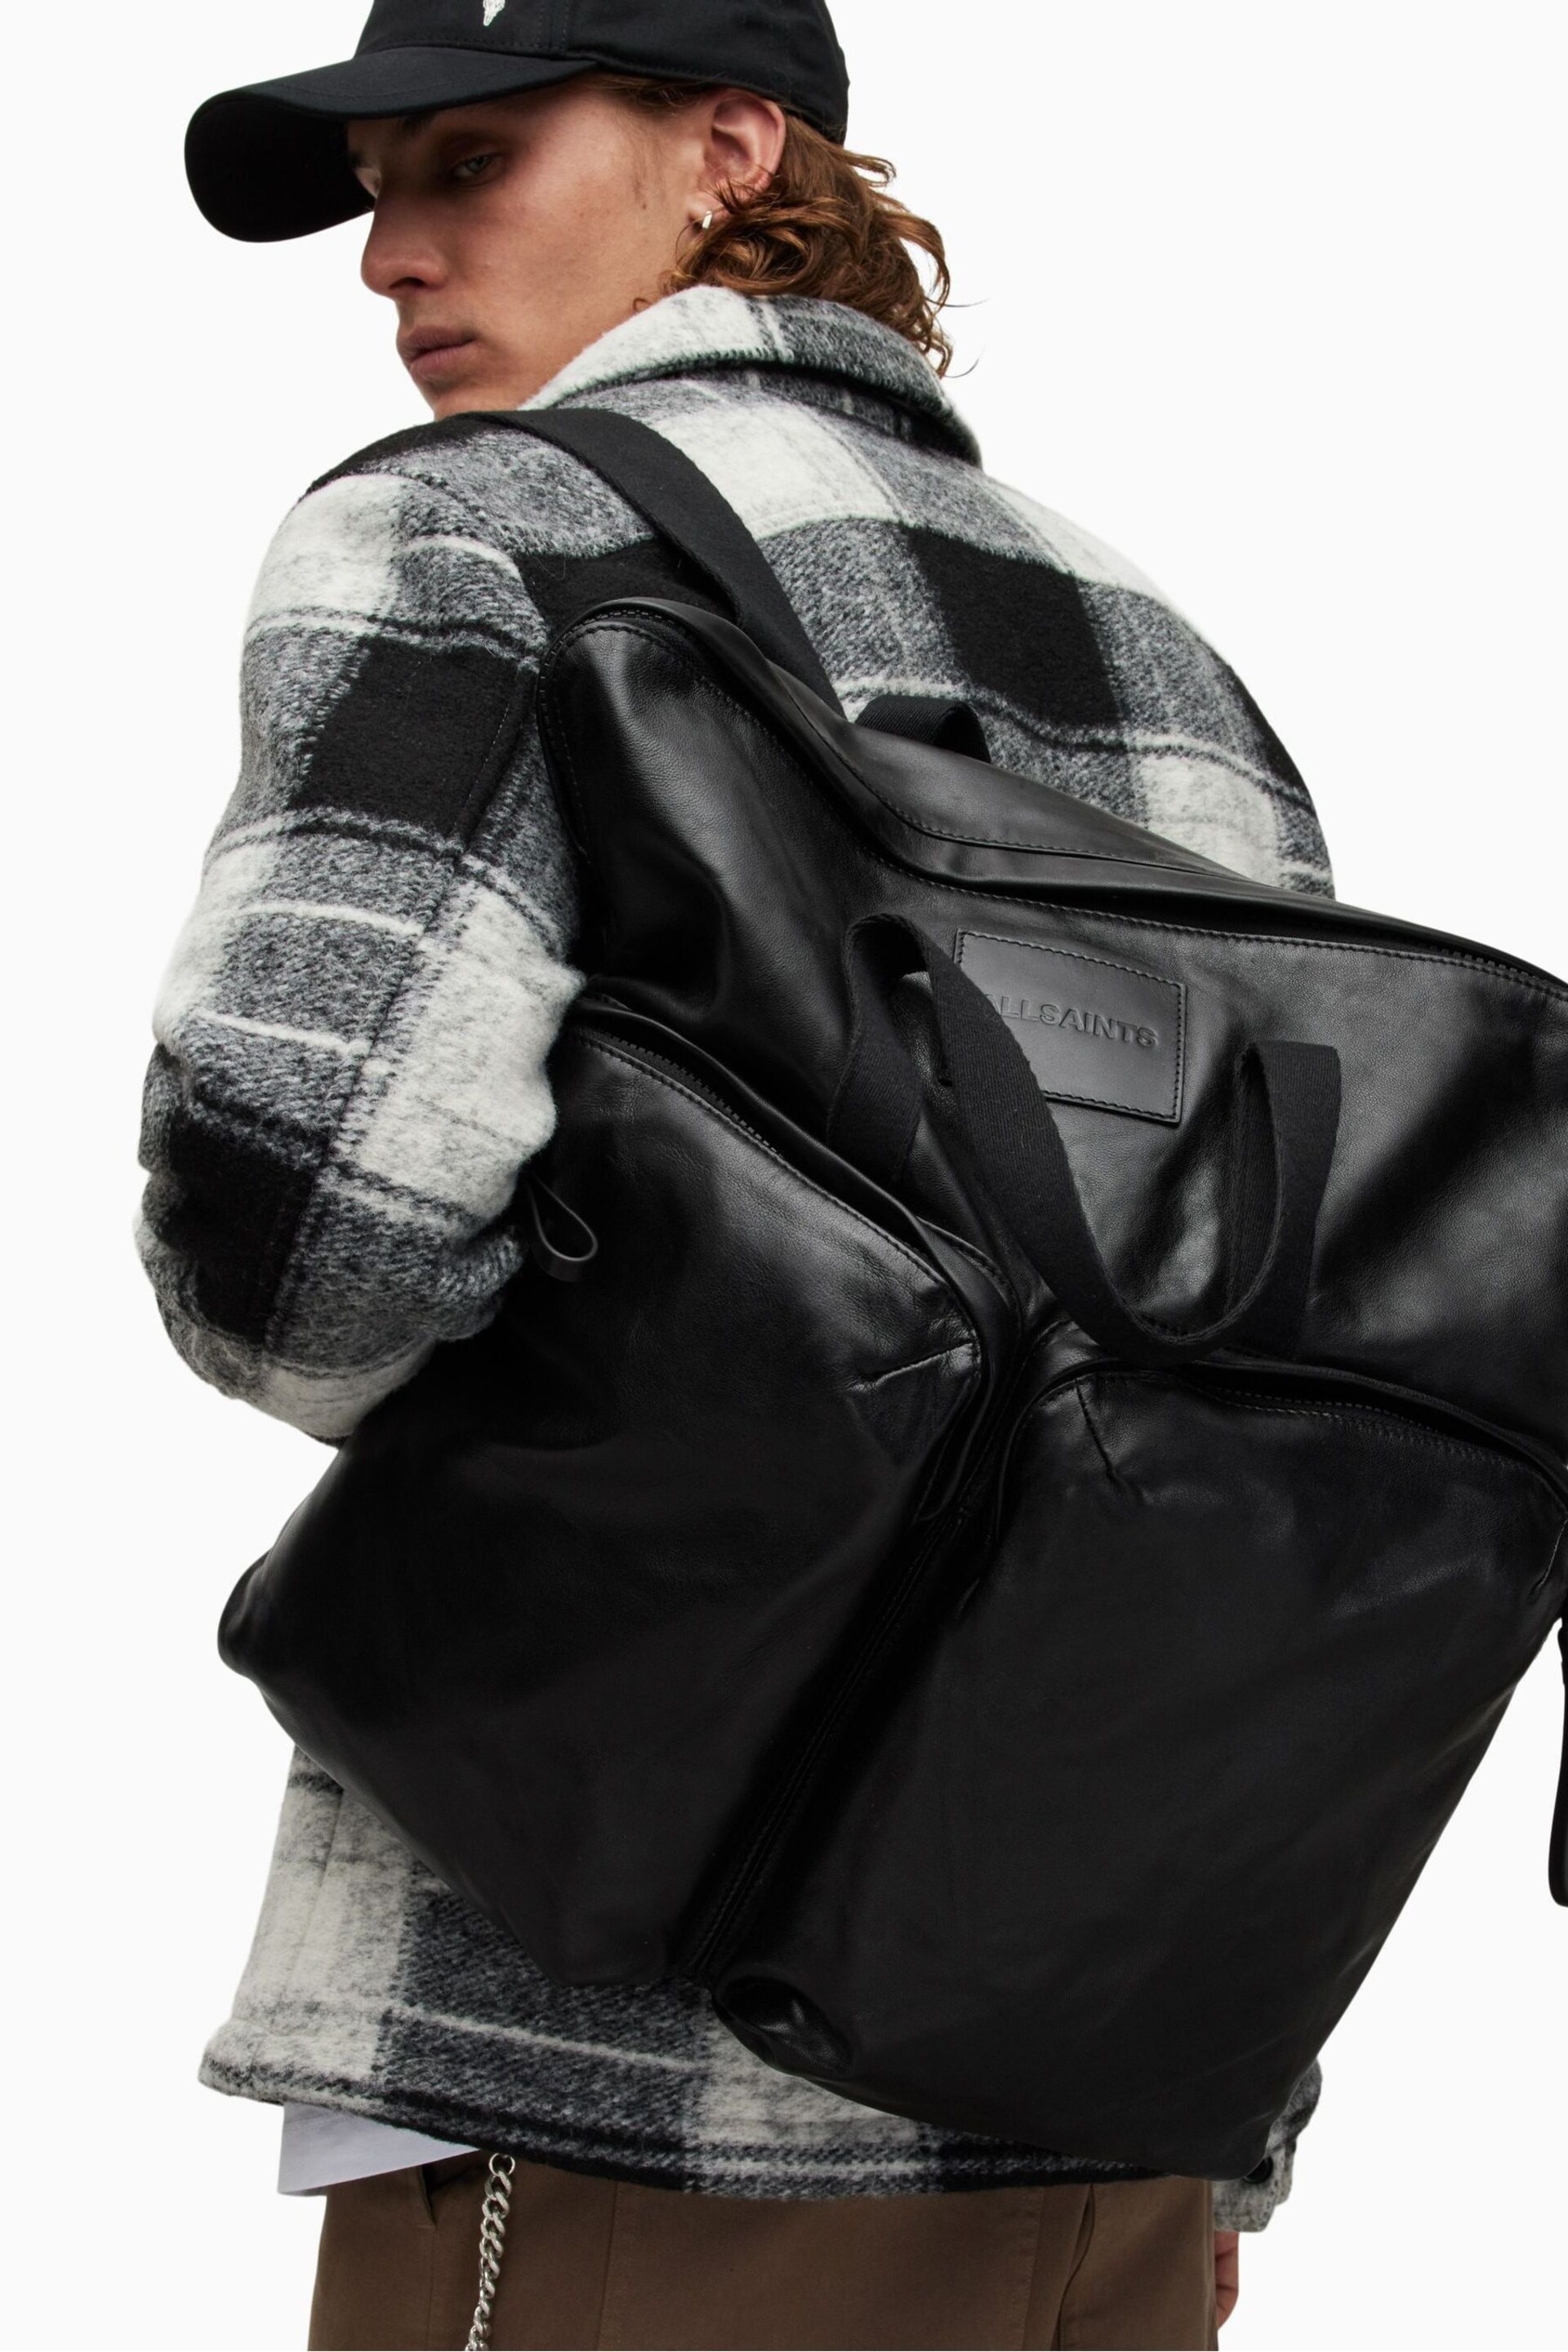 AllSaints Black Force Backpack - Image 2 of 7